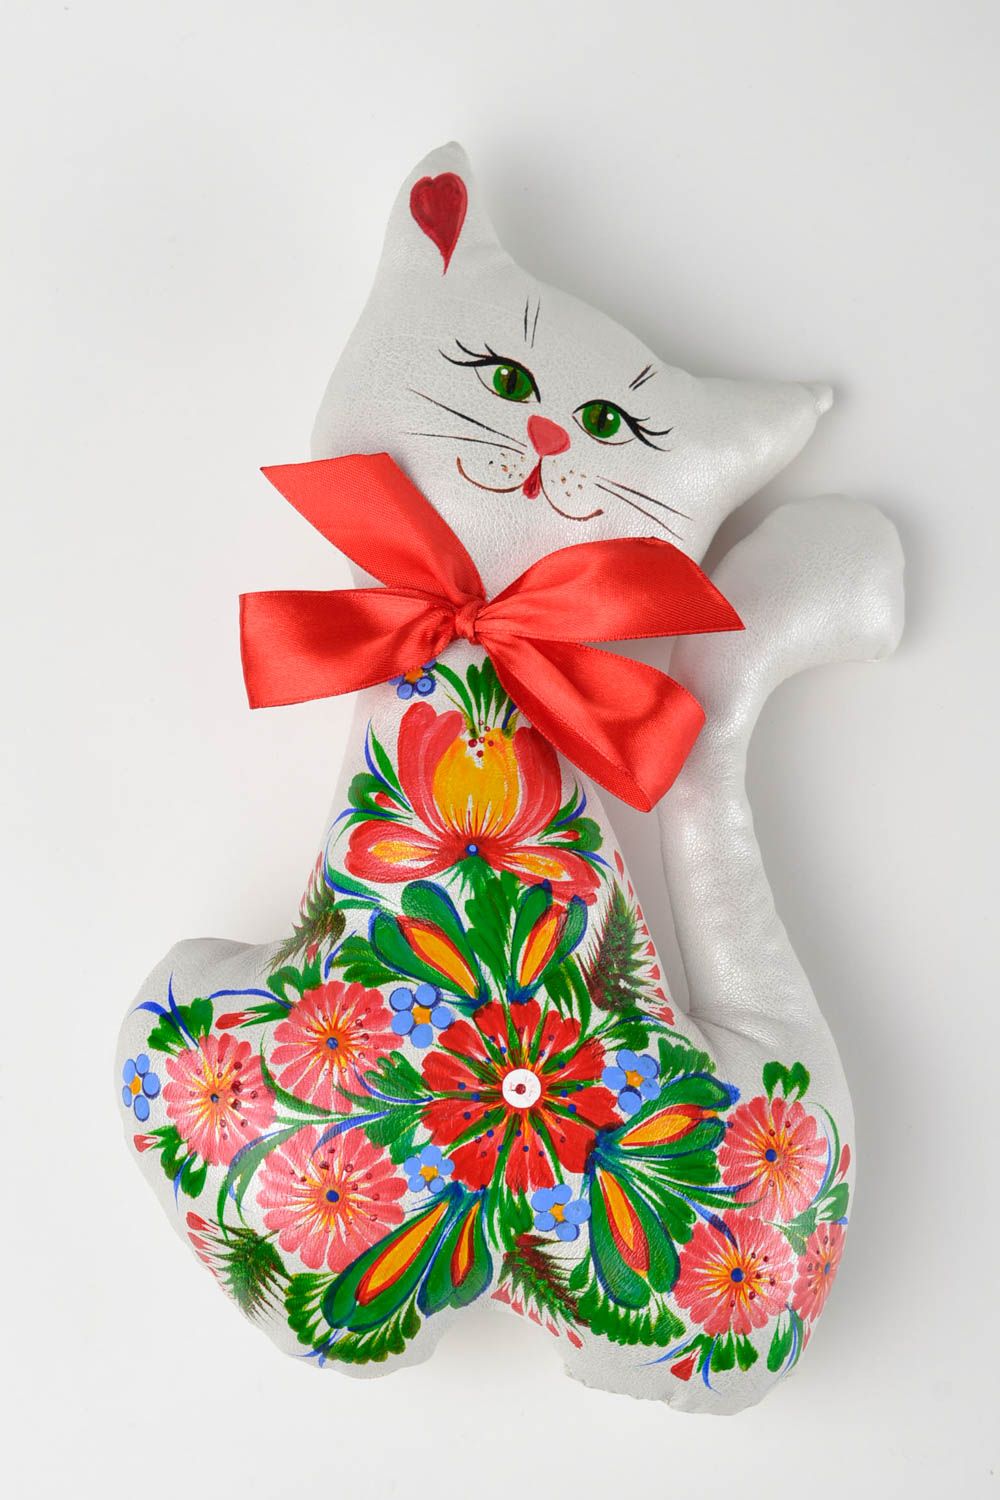 Игрушка кошка игрушка ручной работы интересный подарок Кошка с красным бантом фото 1